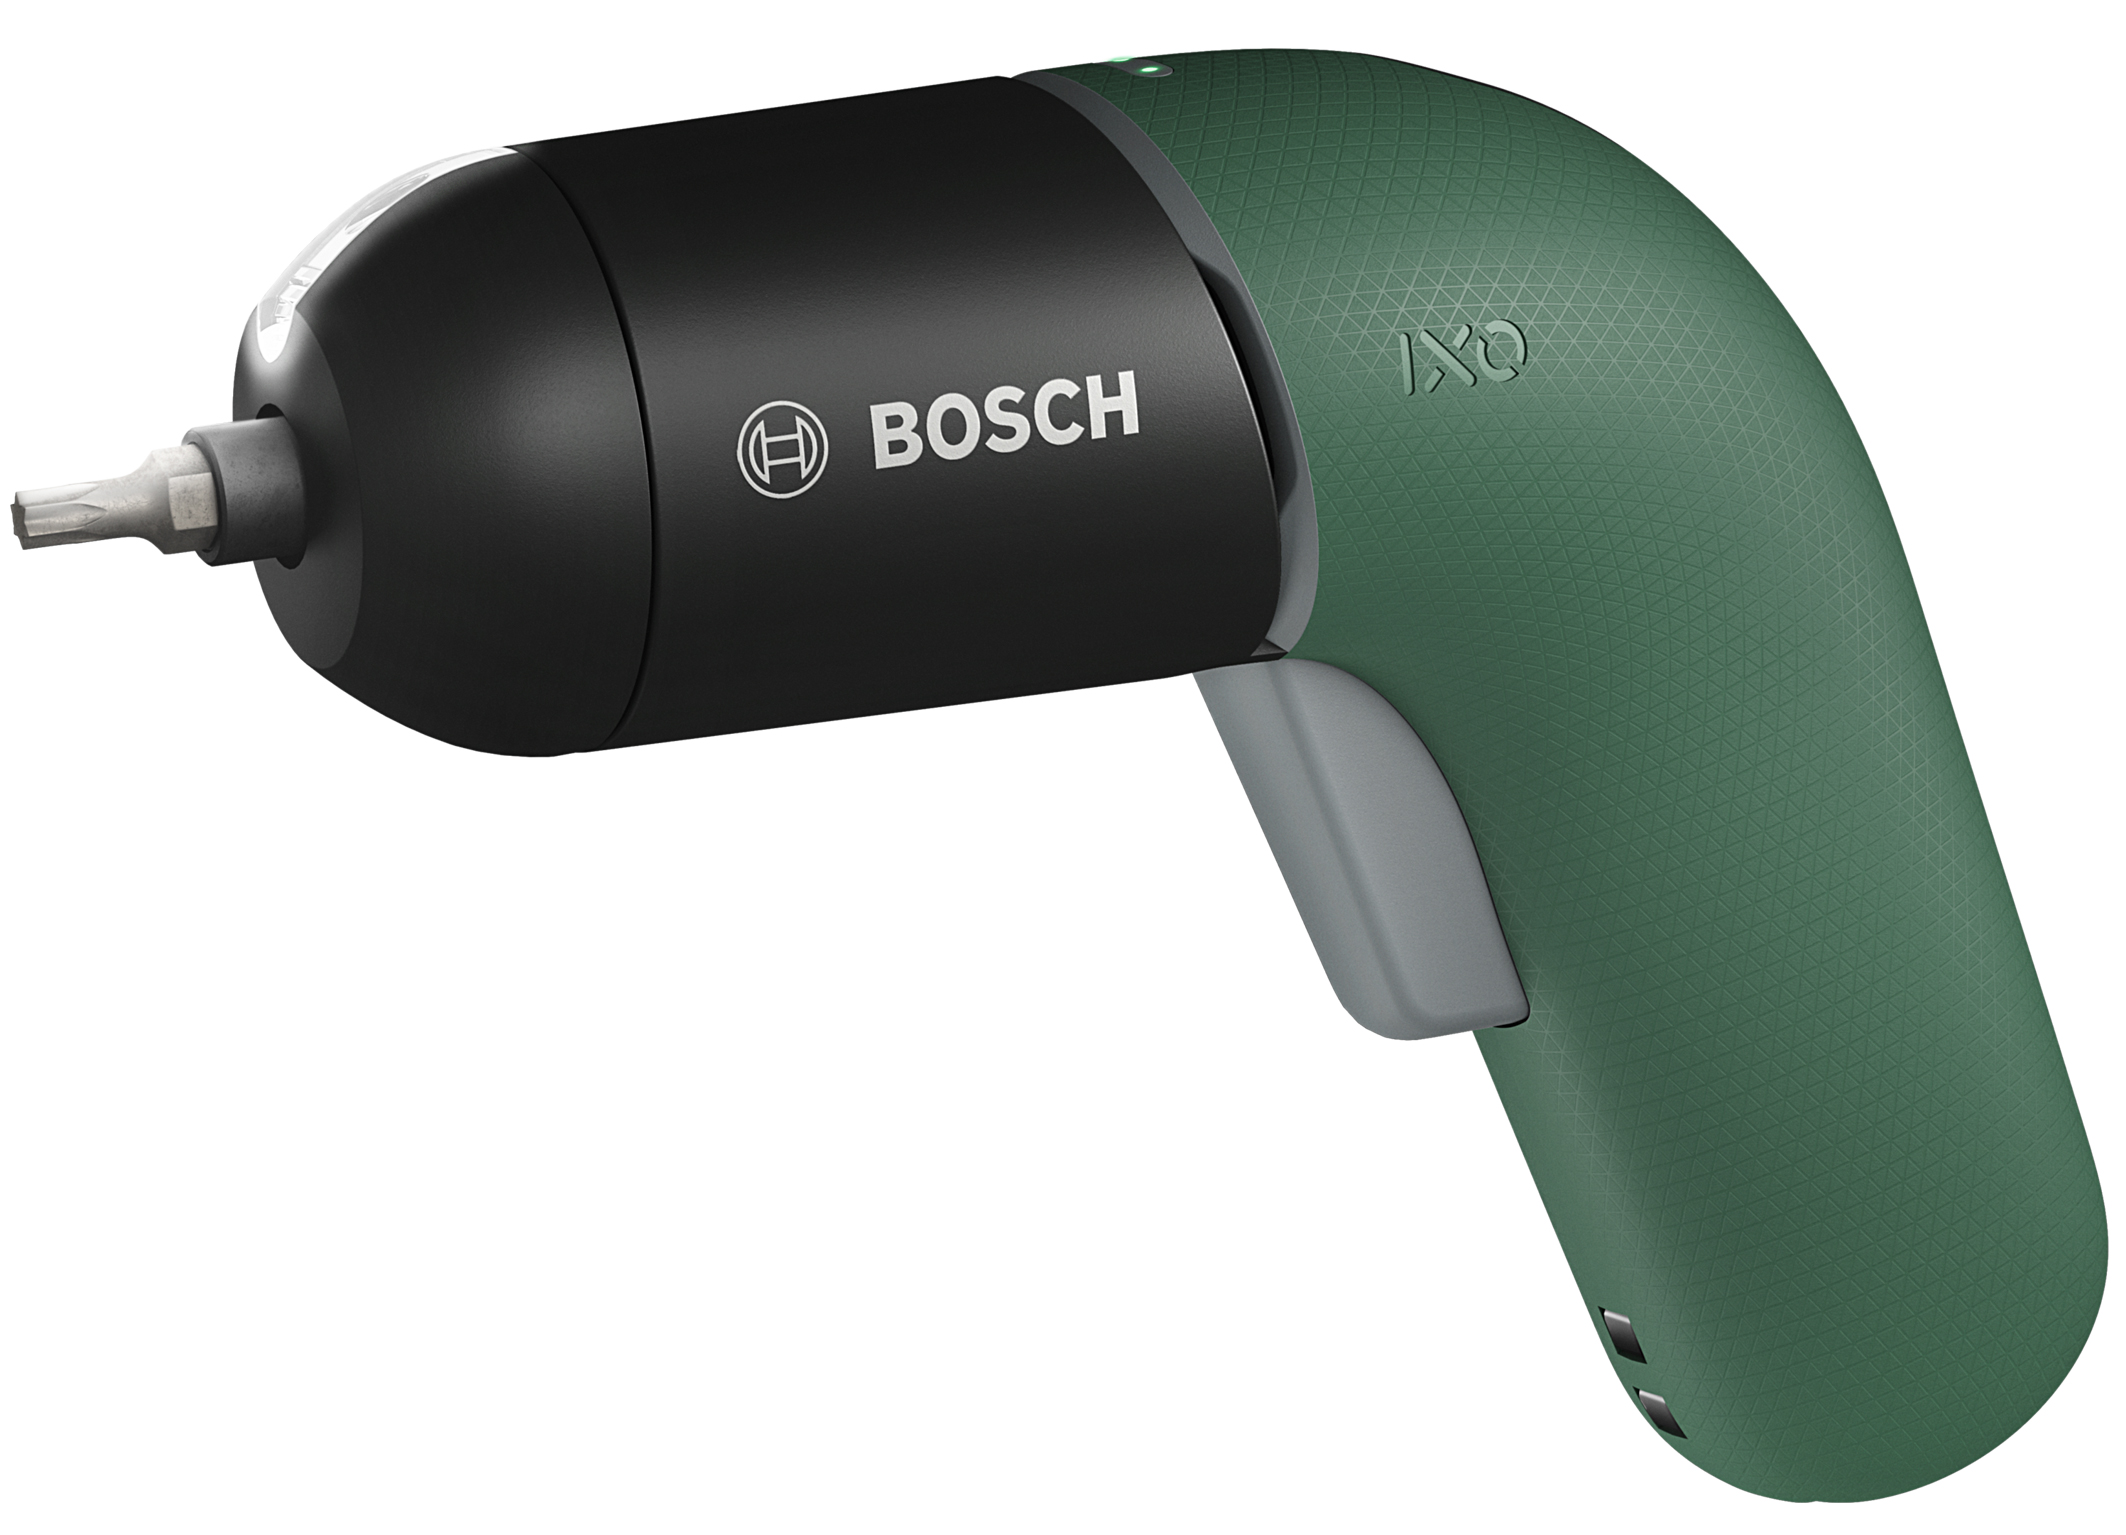 Bosch erfindet den Ixo neu